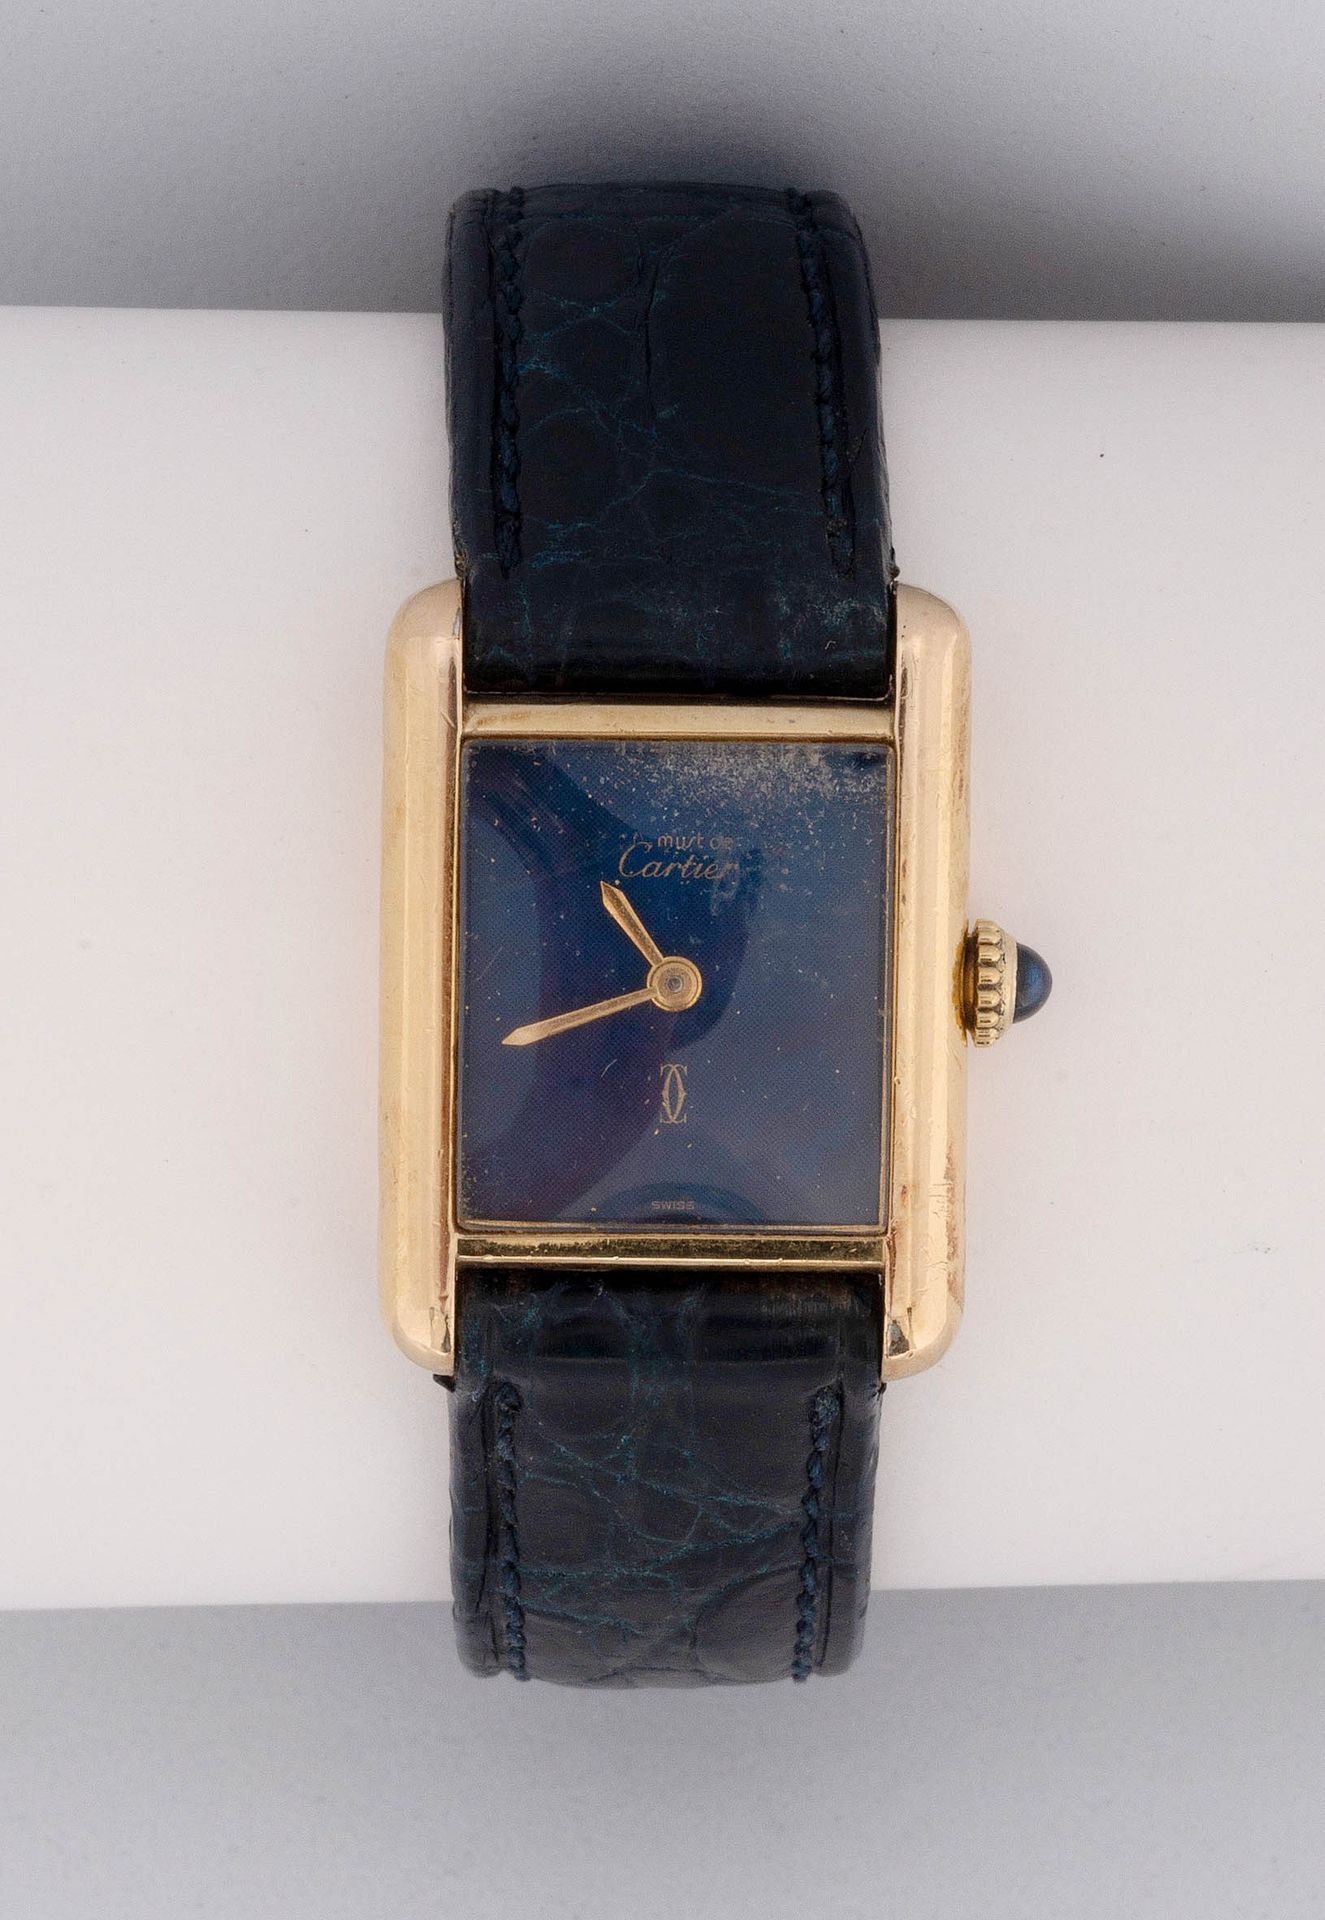 Null Uhr der Marke "Must de Cartier" aus Silbervermeil, Modell Tank. Mechanische&hellip;